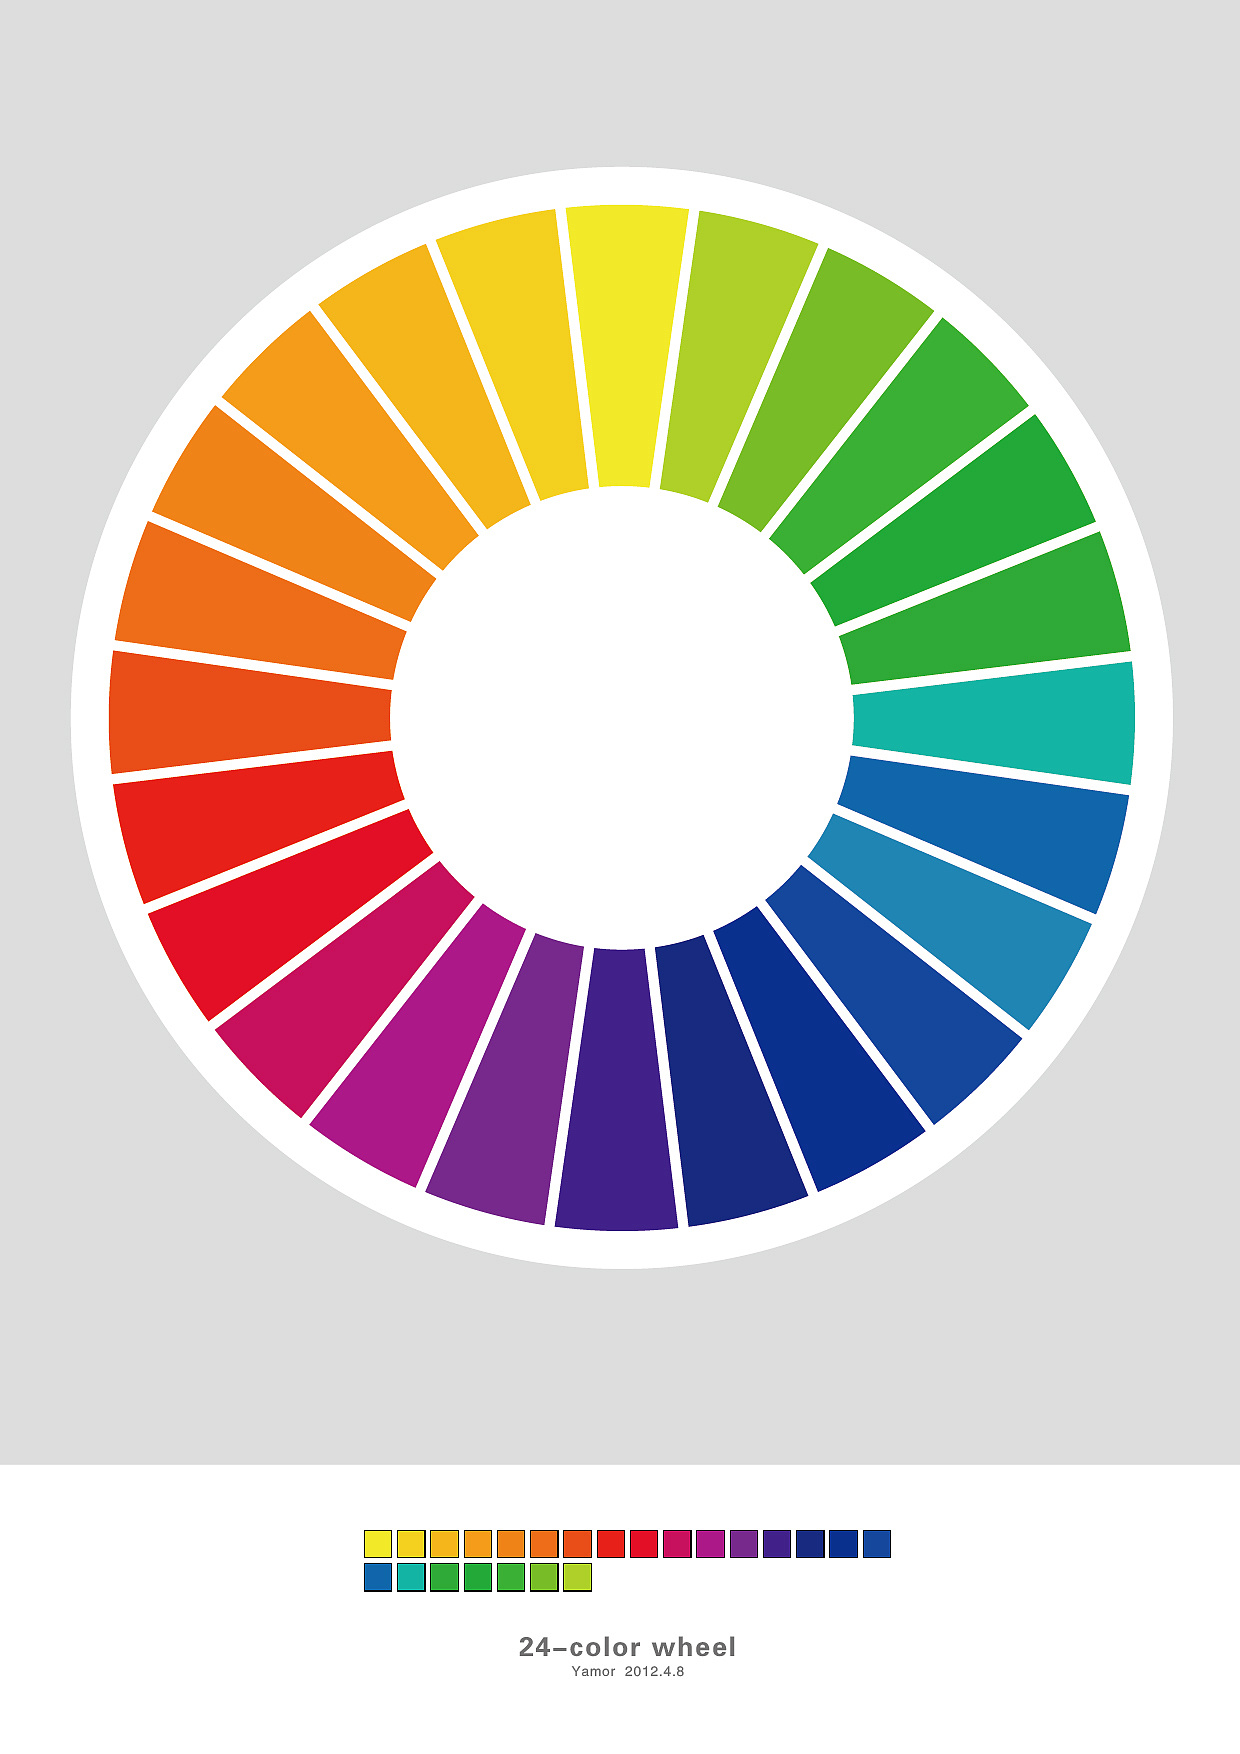 色相環:簡介,色相,十環,十二環,十六環,二十四環,主要色相,色彩設計,_中文百科全書